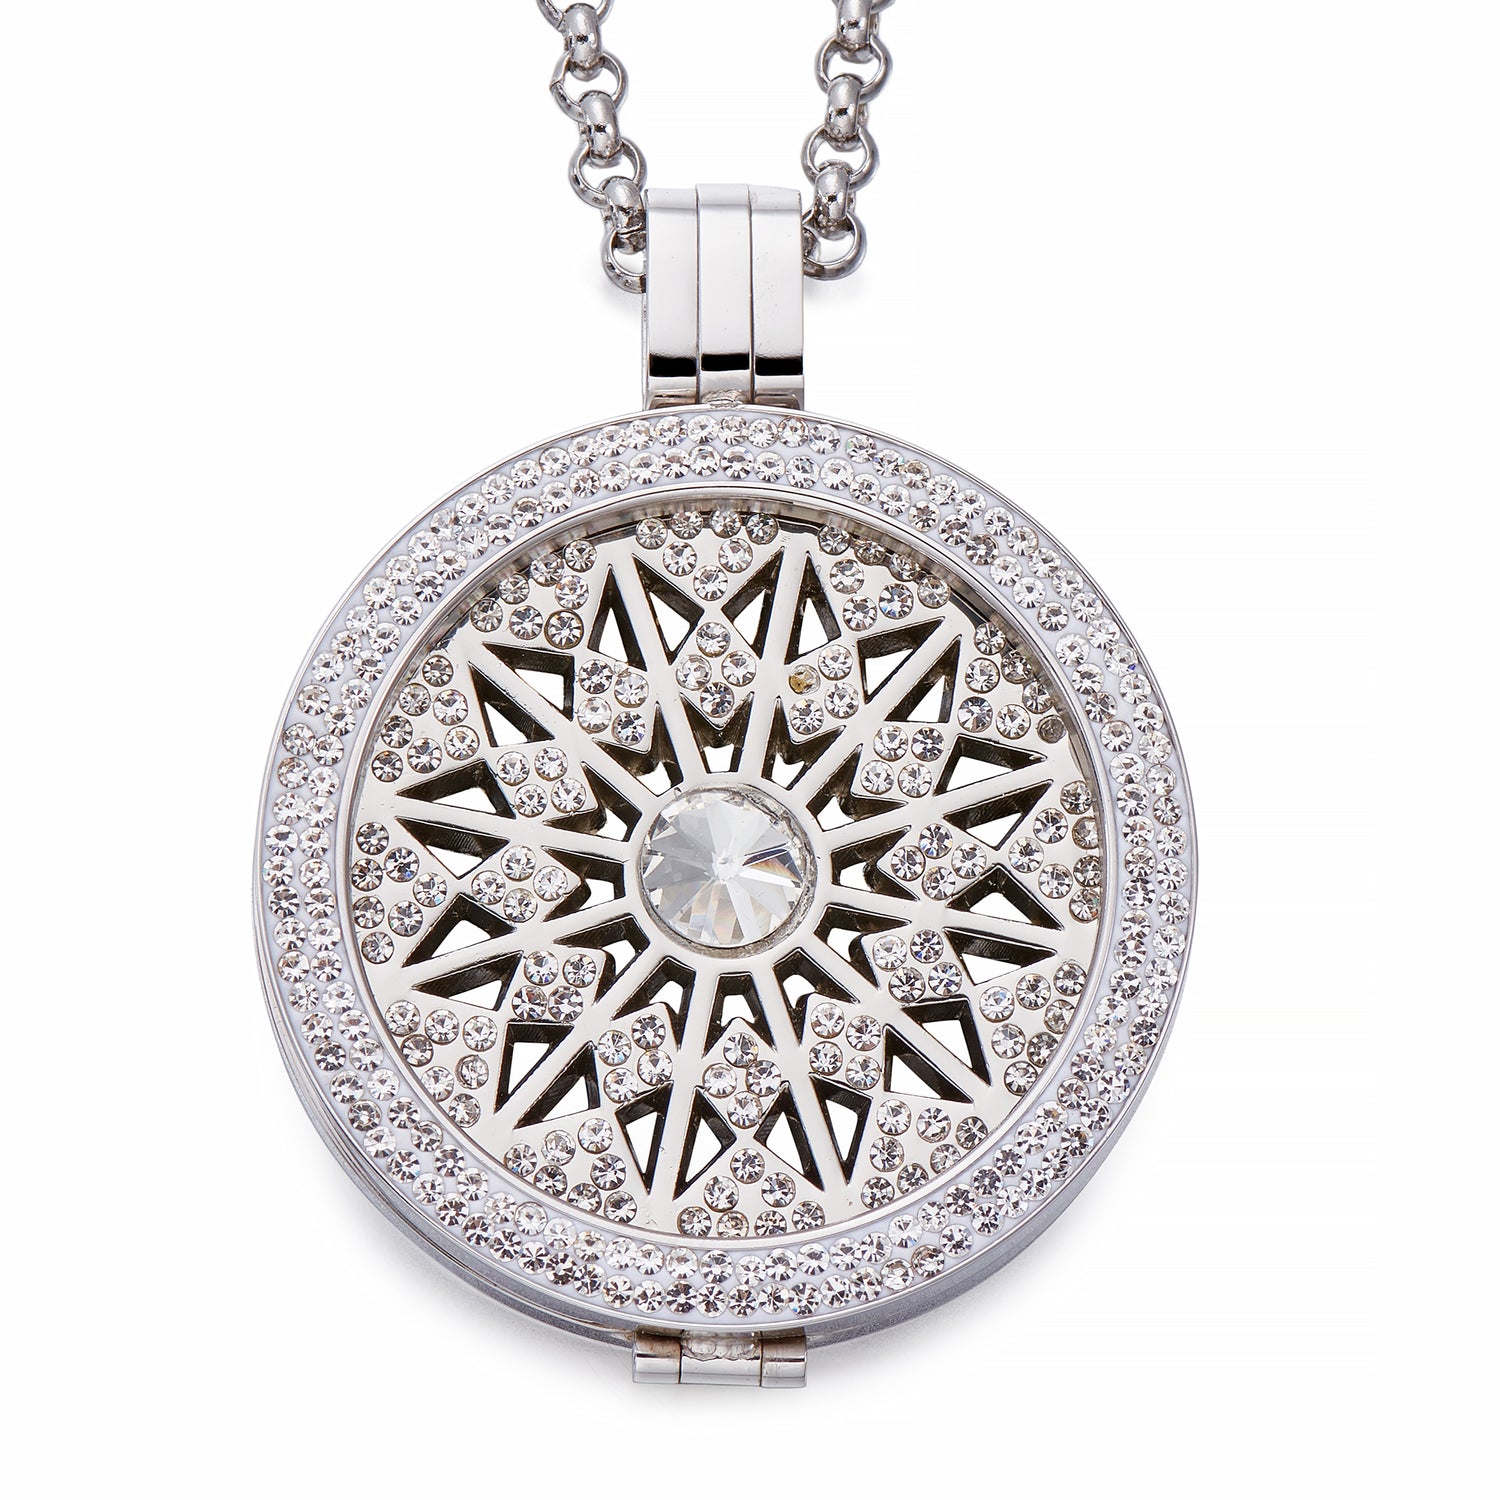 Silver Coin Pendant Necklace | ${Vendor}